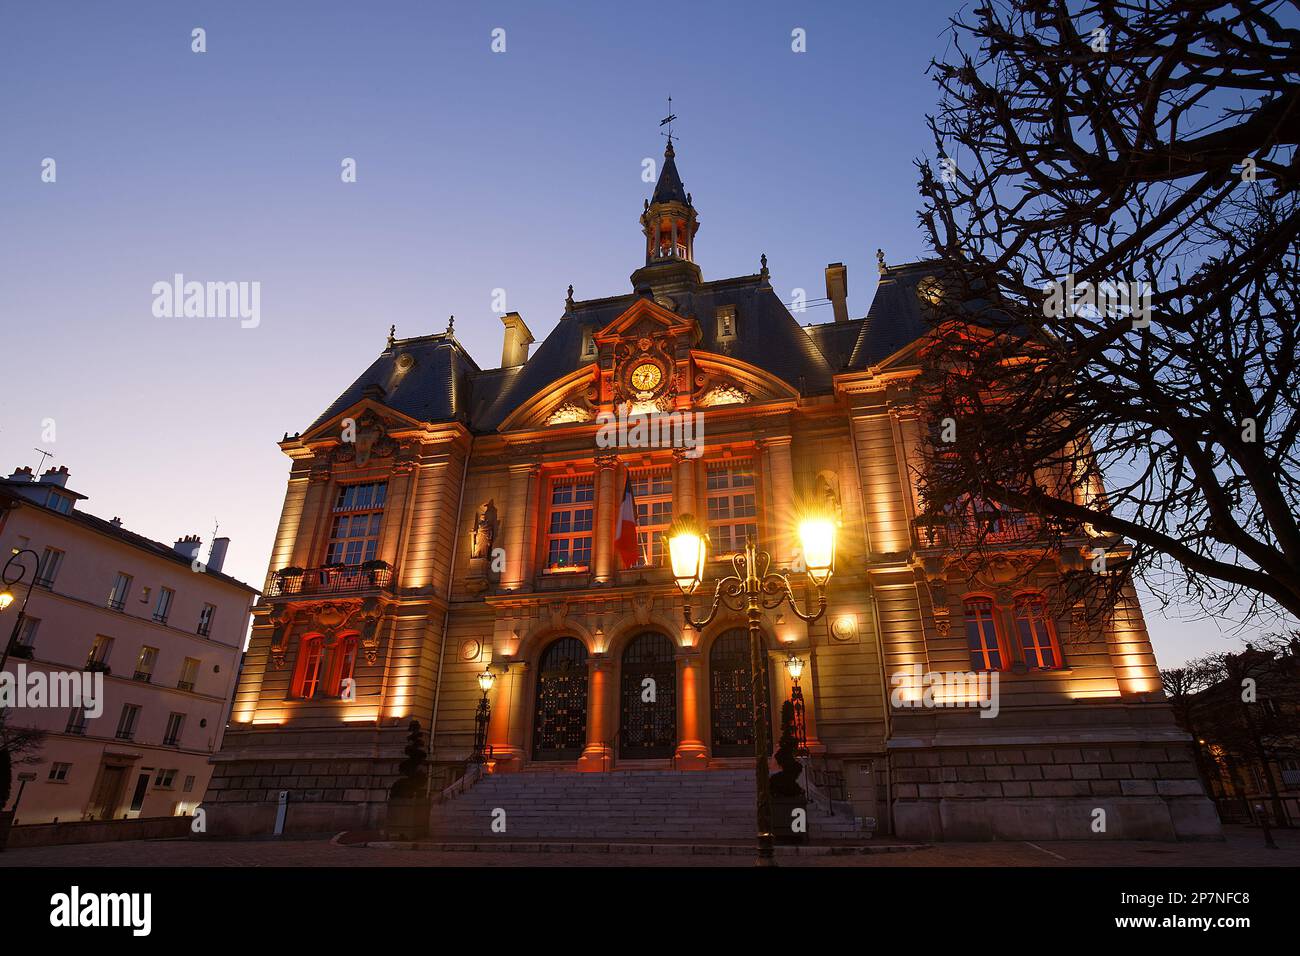 Nachtsicht auf das Rathaus von Suresnes. Es handelt sich um eine französische Gemeinde des Departements Hauts-de-seine in der Region Ile-de-France. Stockfoto